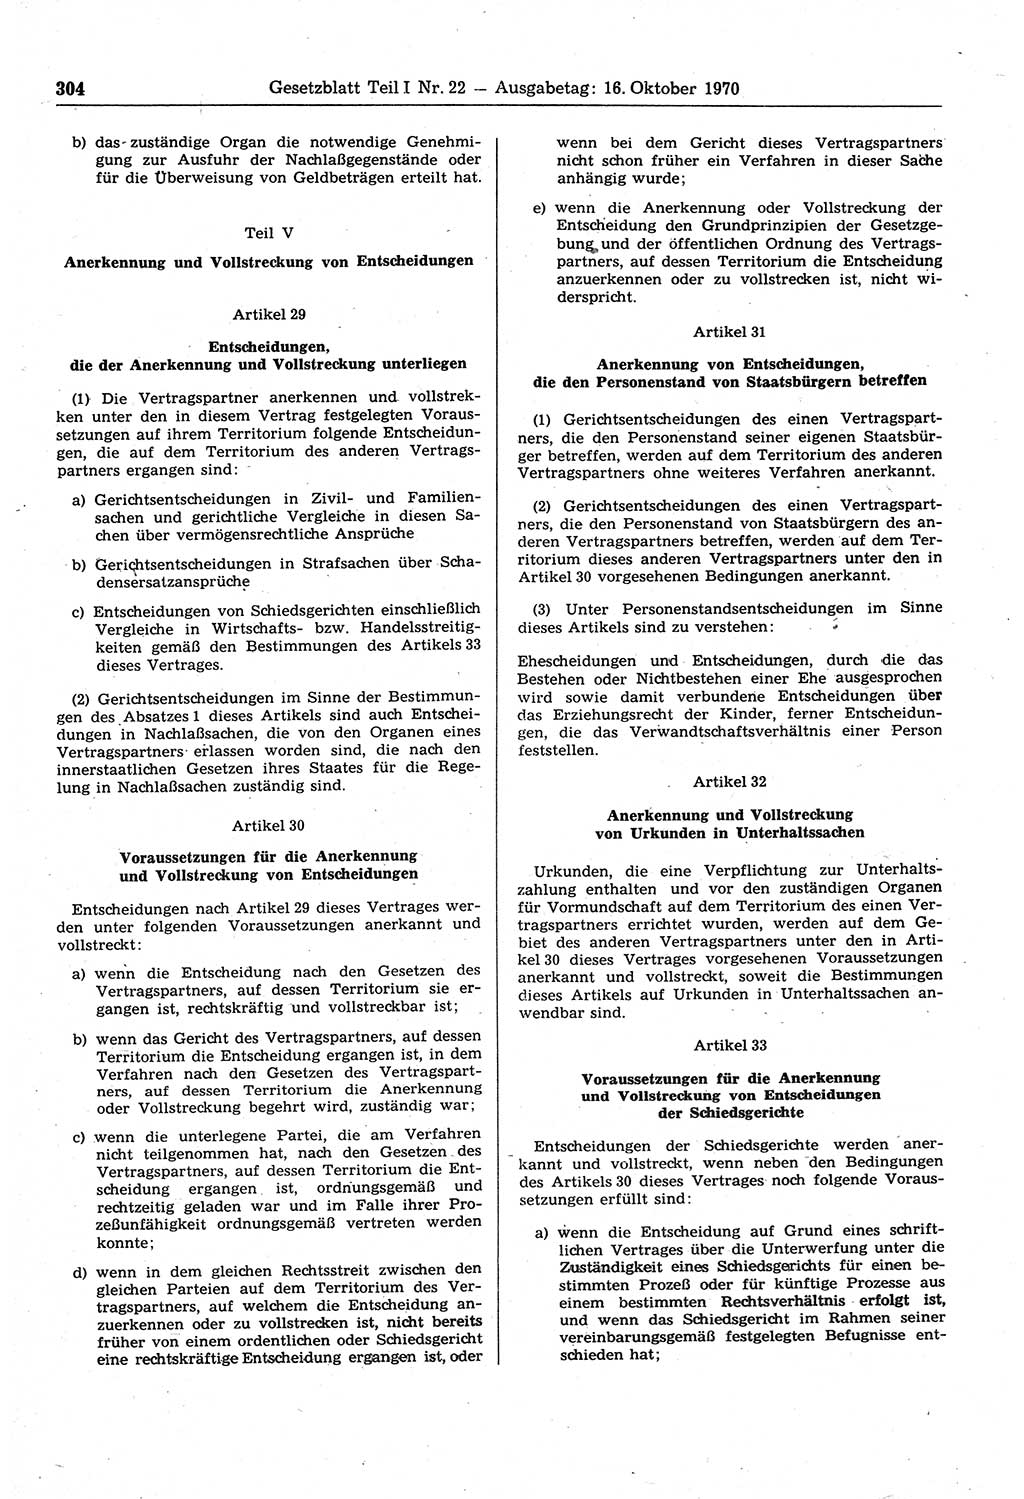 Gesetzblatt (GBl.) der Deutschen Demokratischen Republik (DDR) Teil Ⅰ 1970, Seite 304 (GBl. DDR Ⅰ 1970, S. 304)